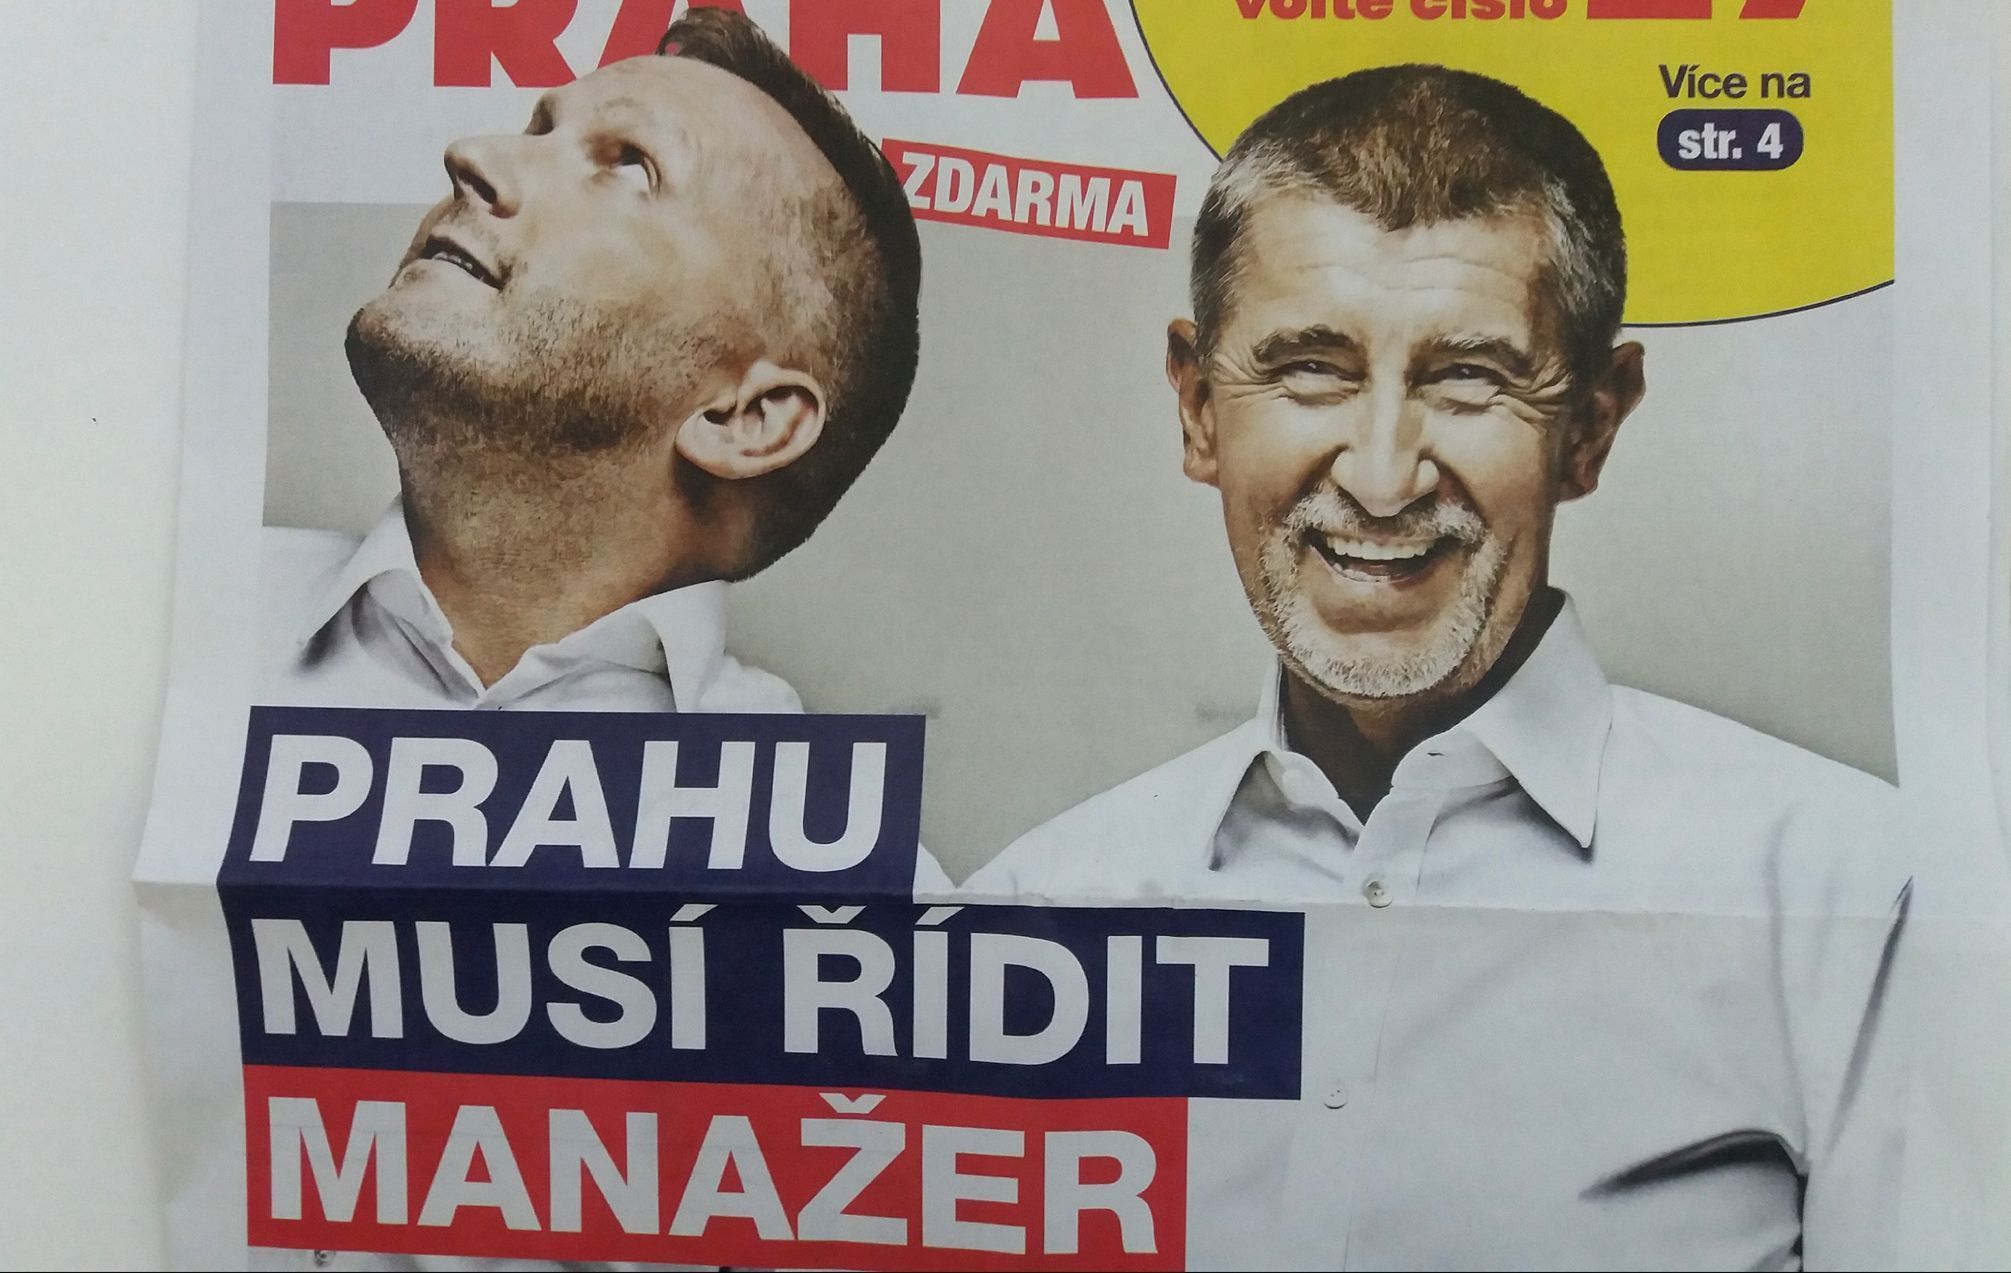 Lepší Praha? Stuchlík a Babiš a Prahu musí řídit manažer. Předvolební speciál ANO 2018.